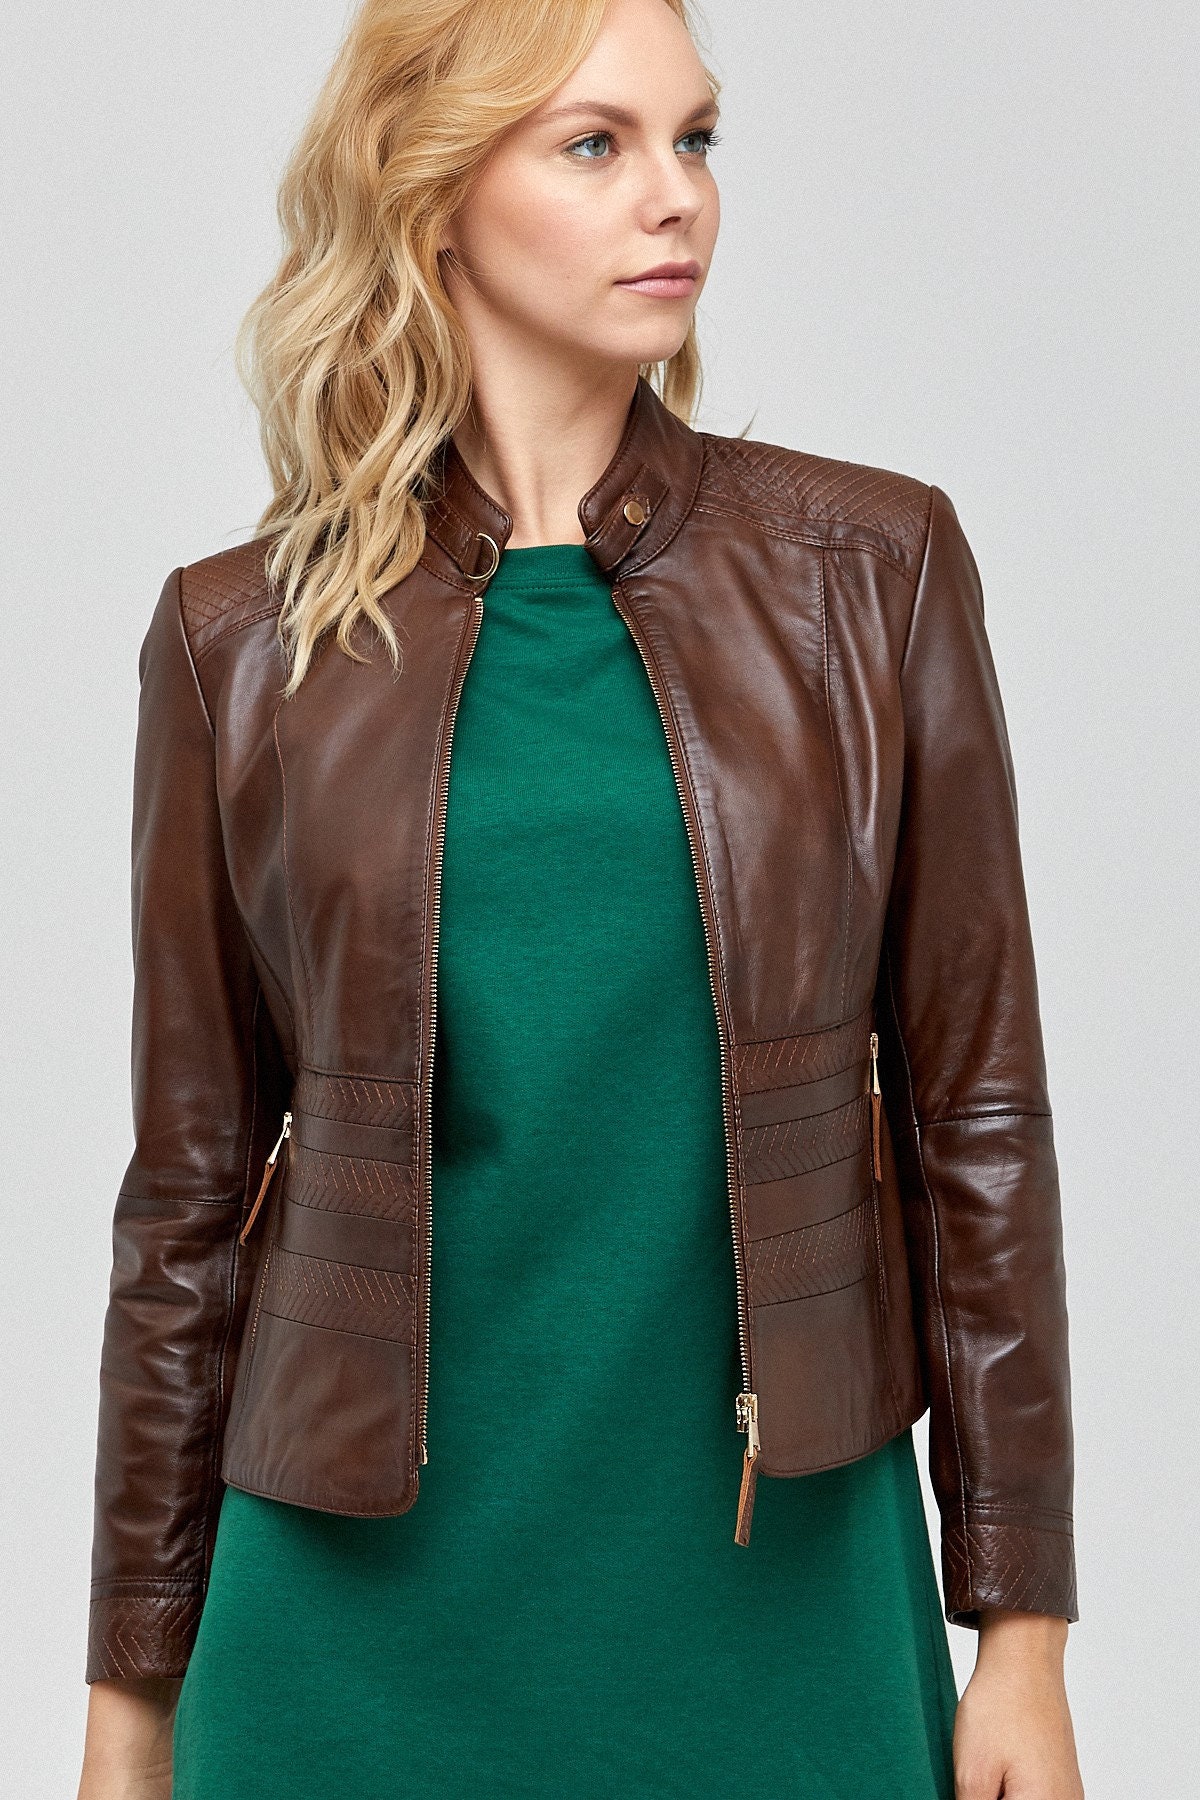 Women Ladies Real Genuine Leather Brown Biker Jacket Slim Fit - Etsy